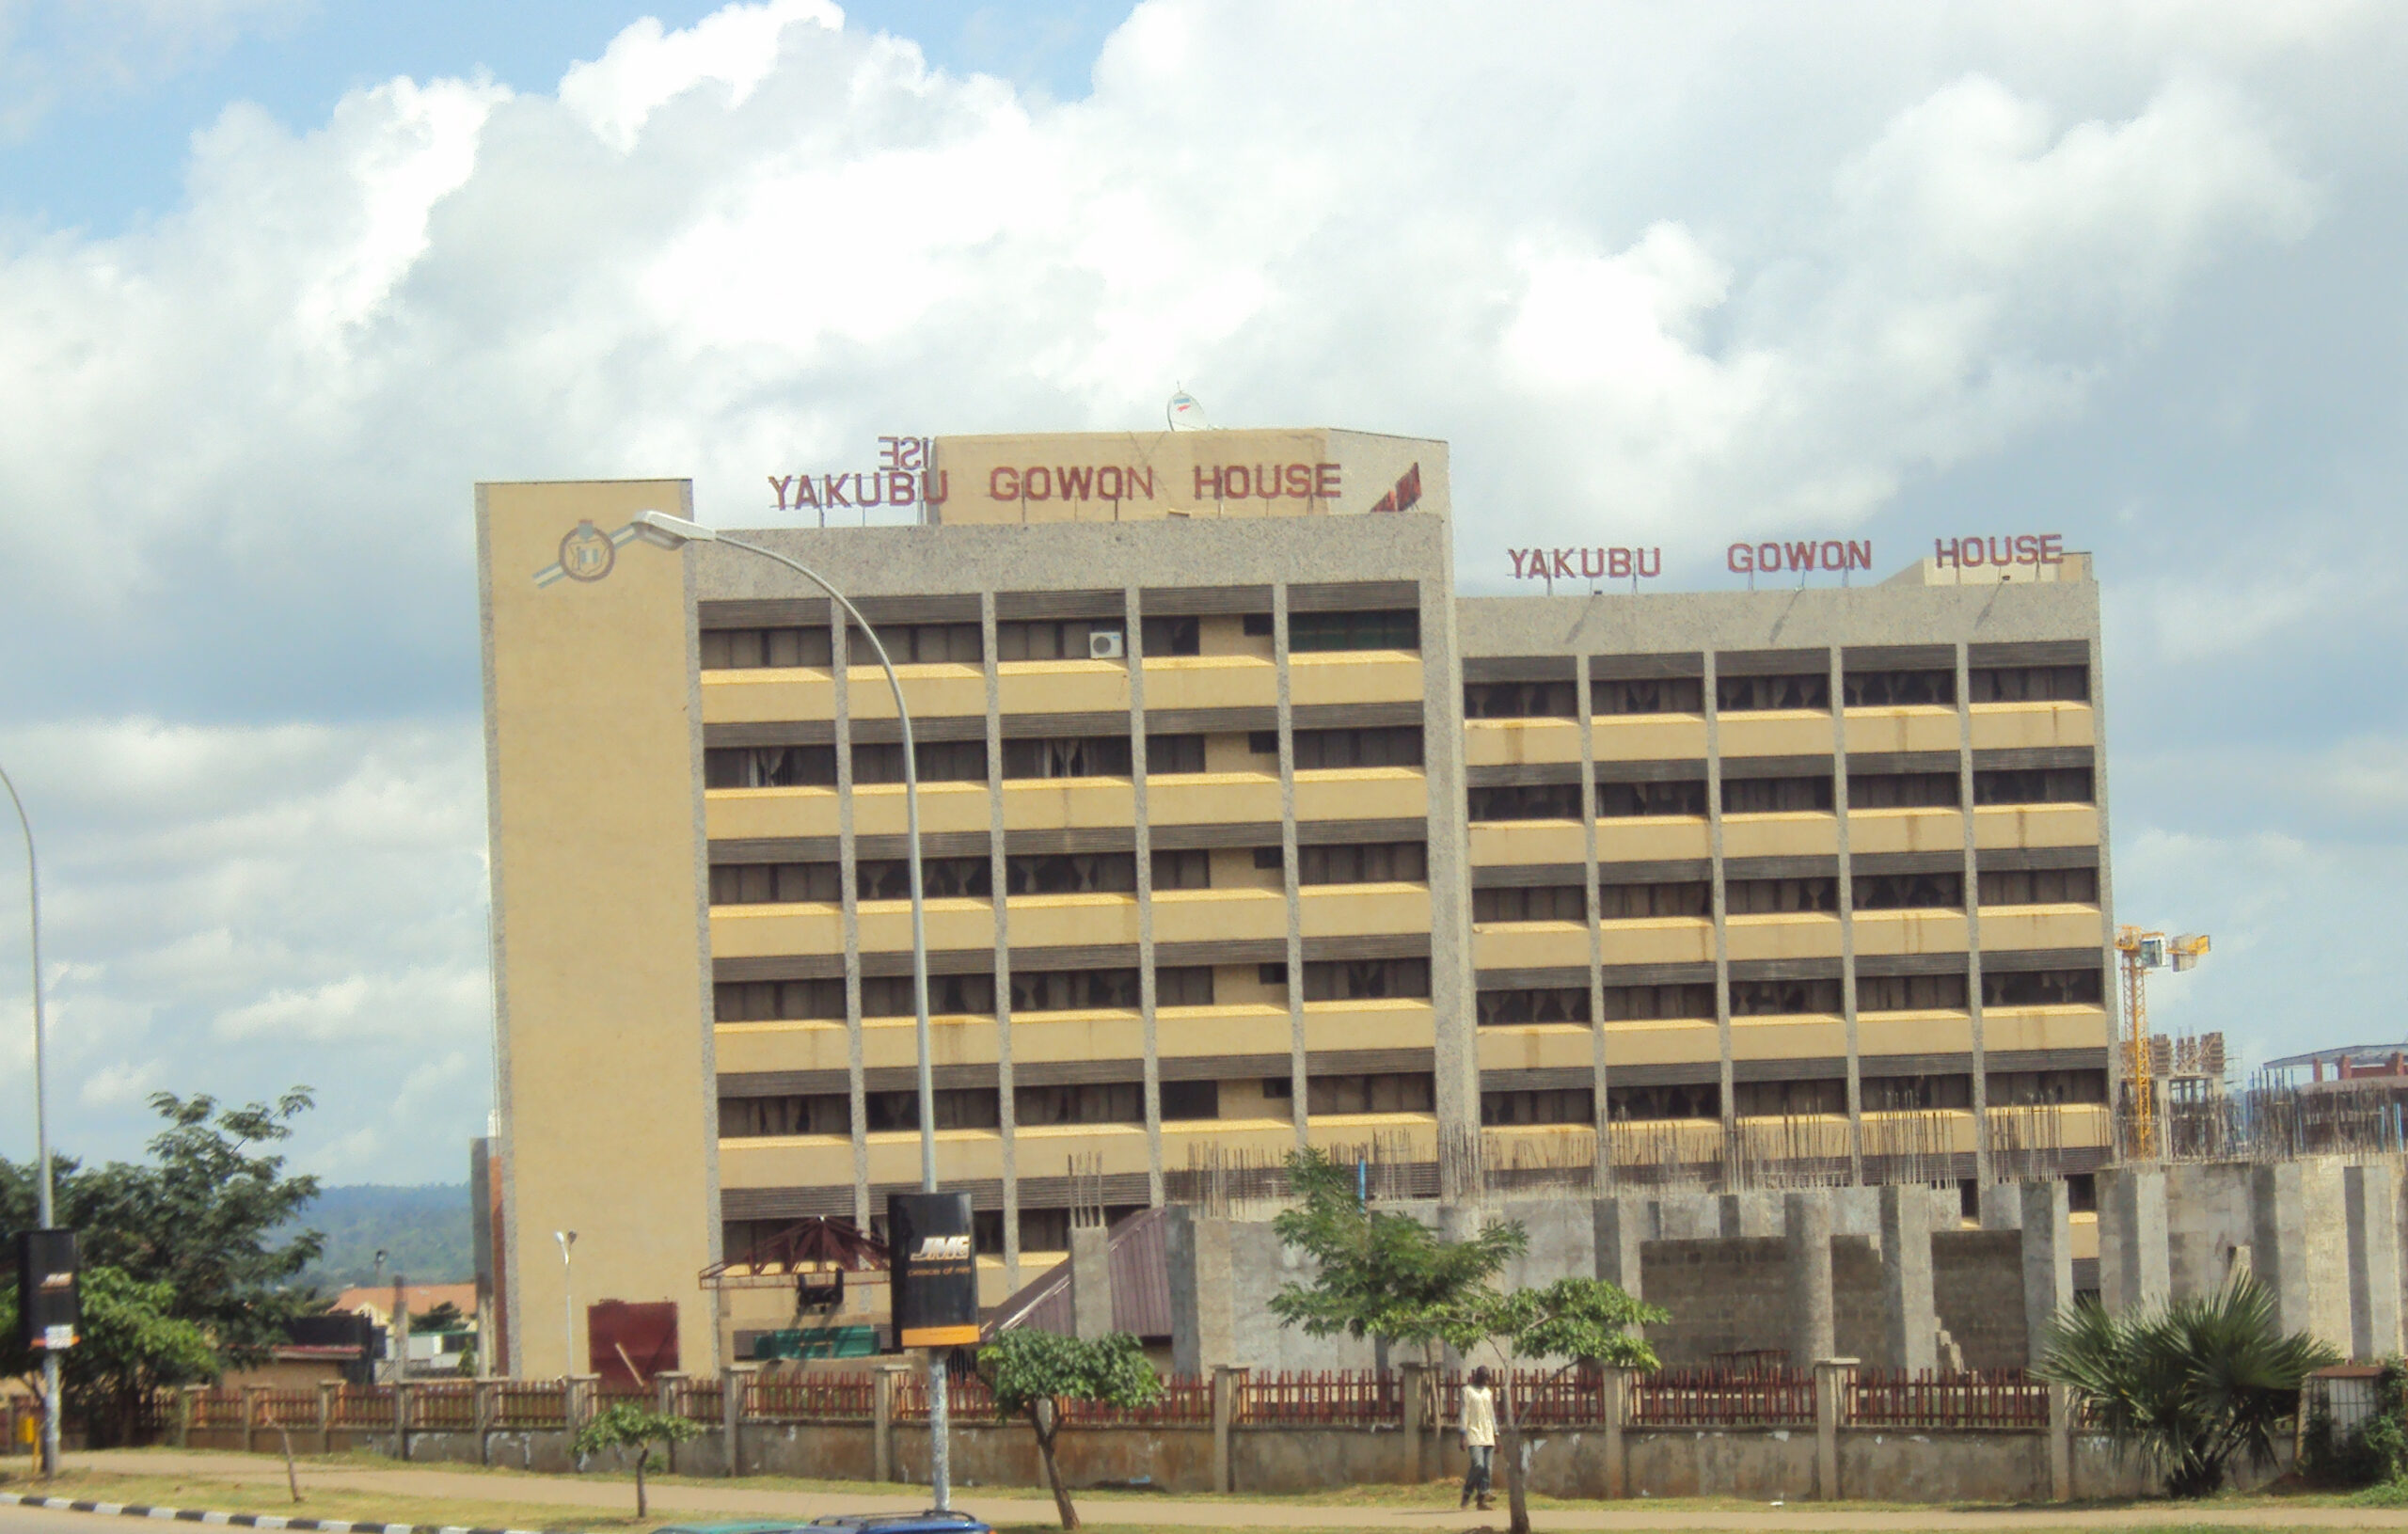 Yakubu-Gowon-House-NYSC-Headquarters-in-Abuja-scaled.jpg